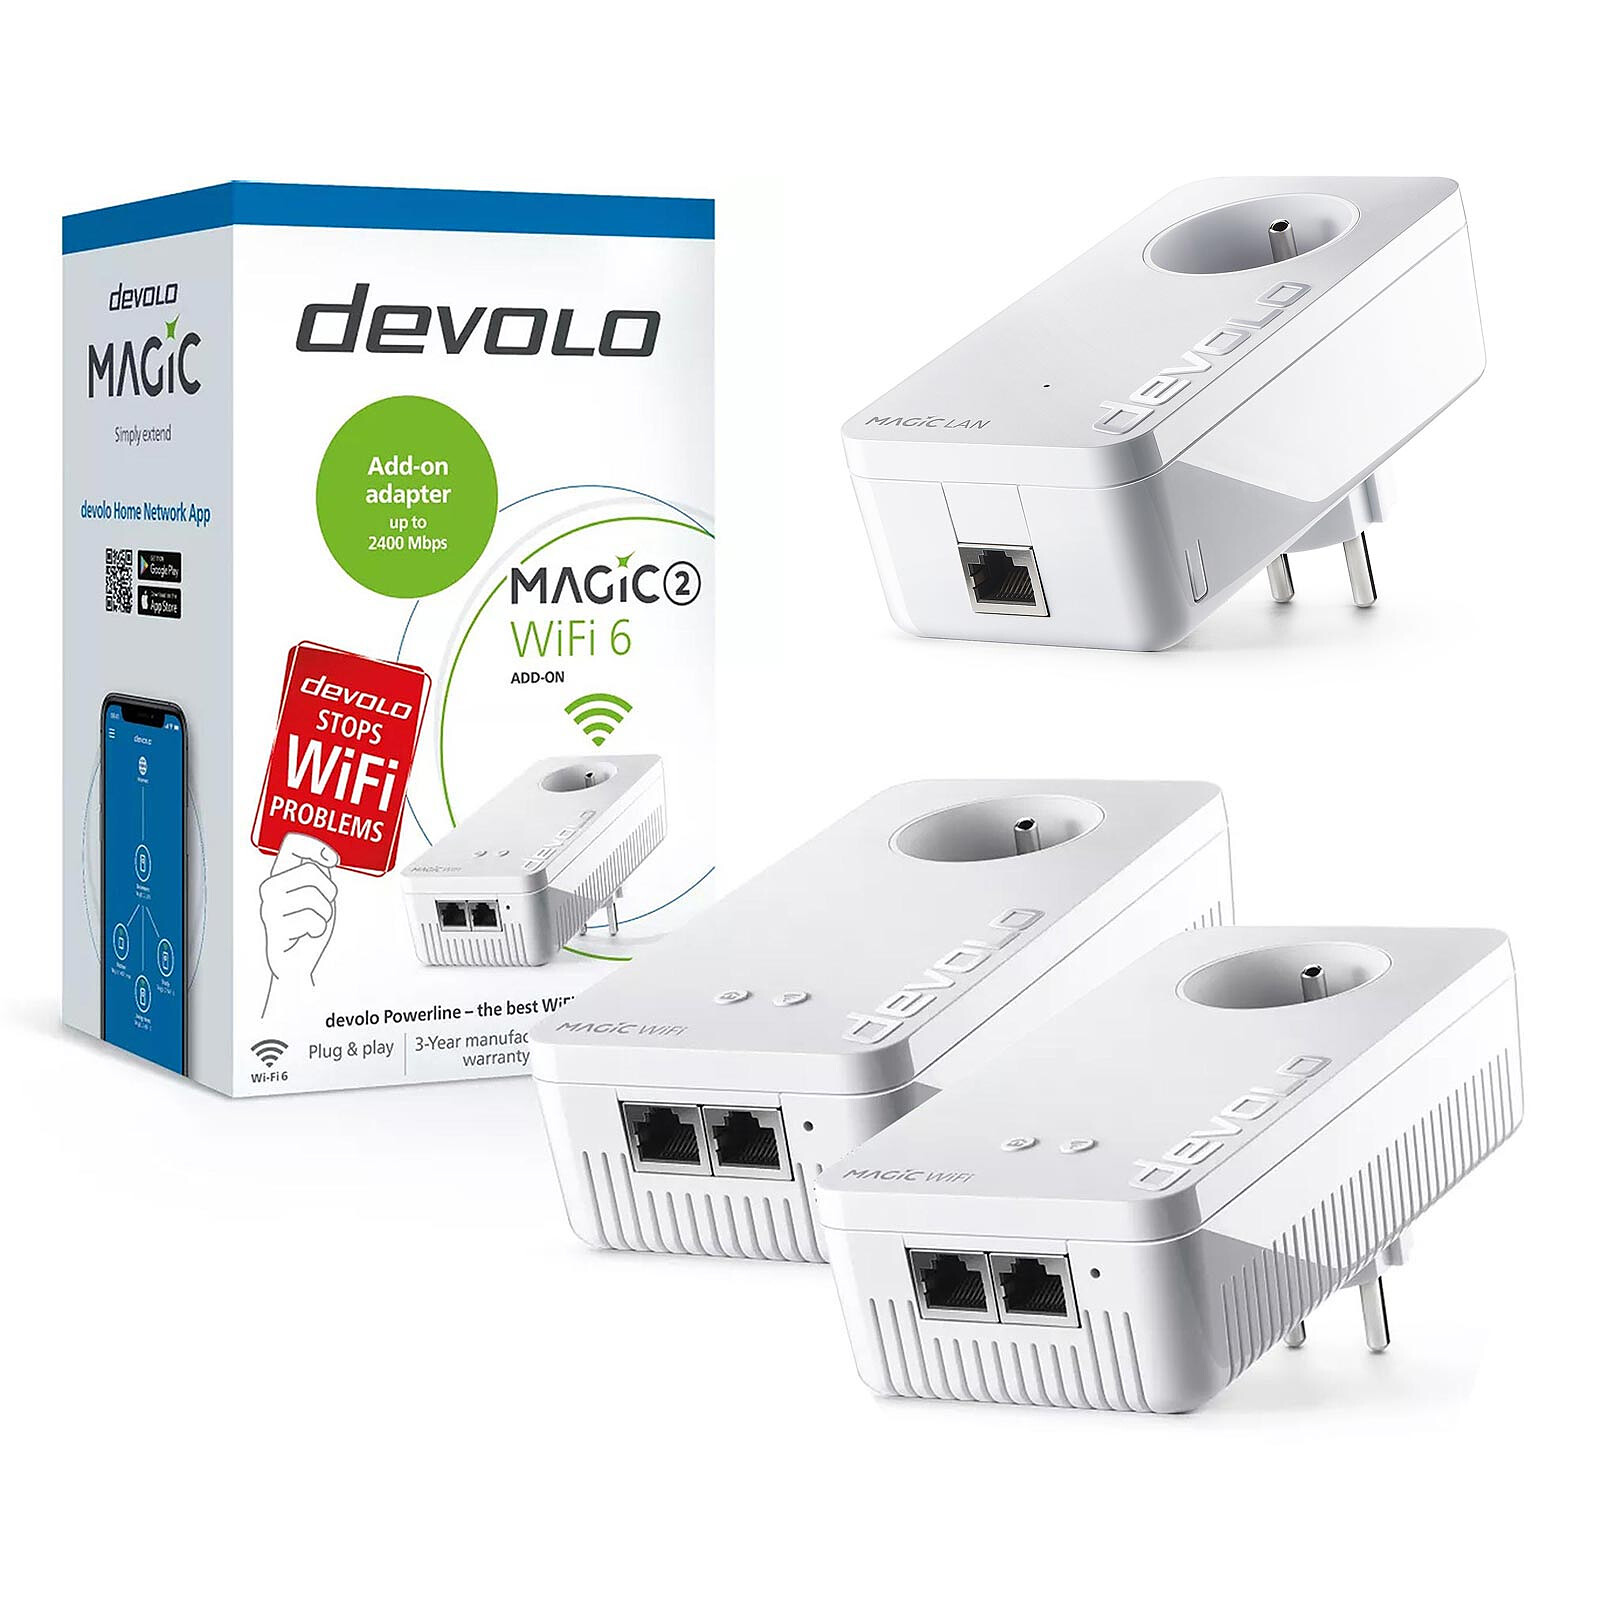 Devolo Magic 2 WiFi : meilleur prix, test et actualités - Les